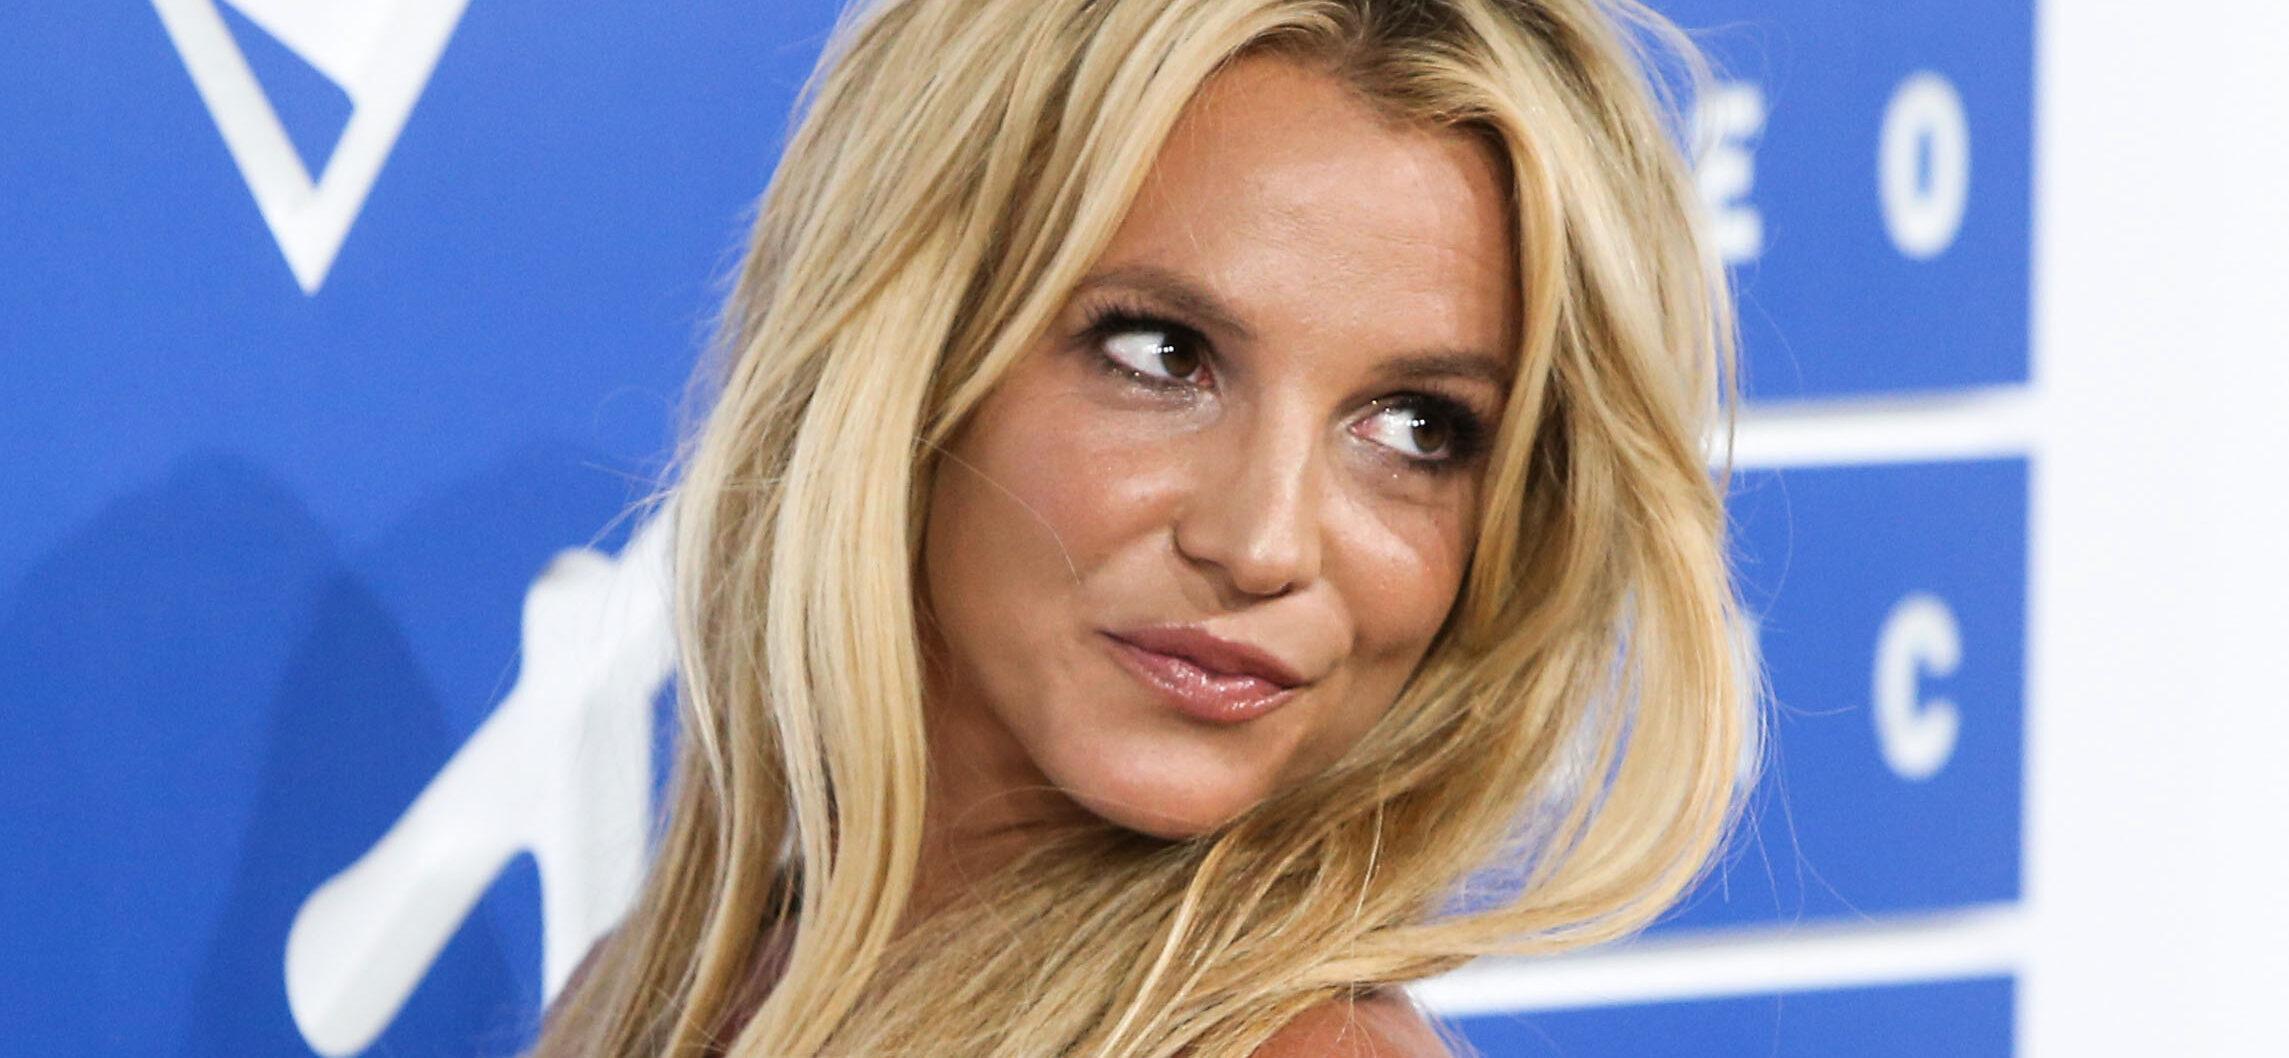 Britney Spears’ Ex Jason Alexander Just CRASHED Her Wedding!